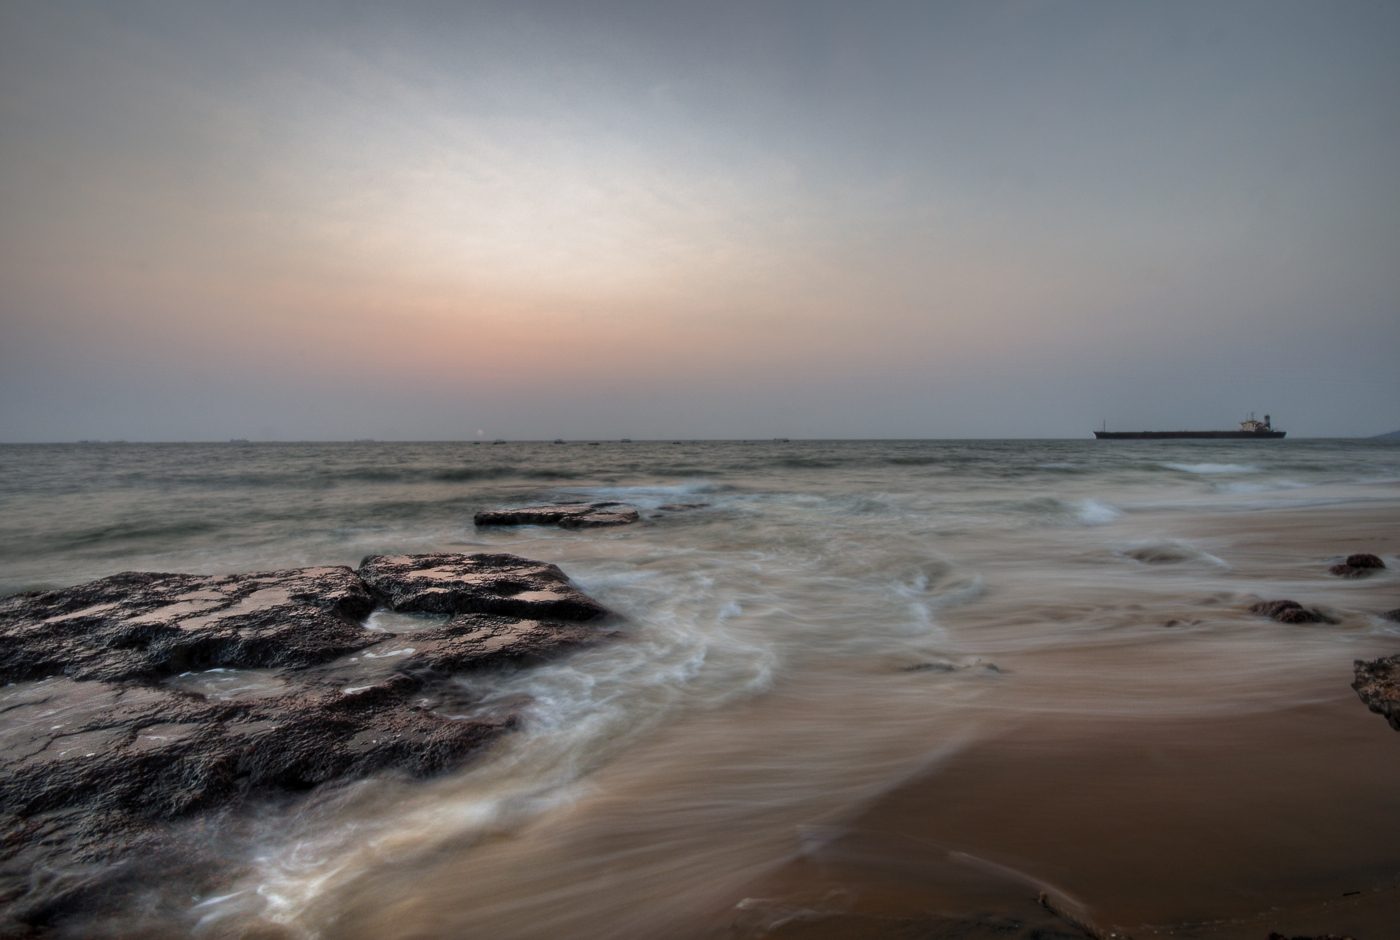 Stranded in Goa